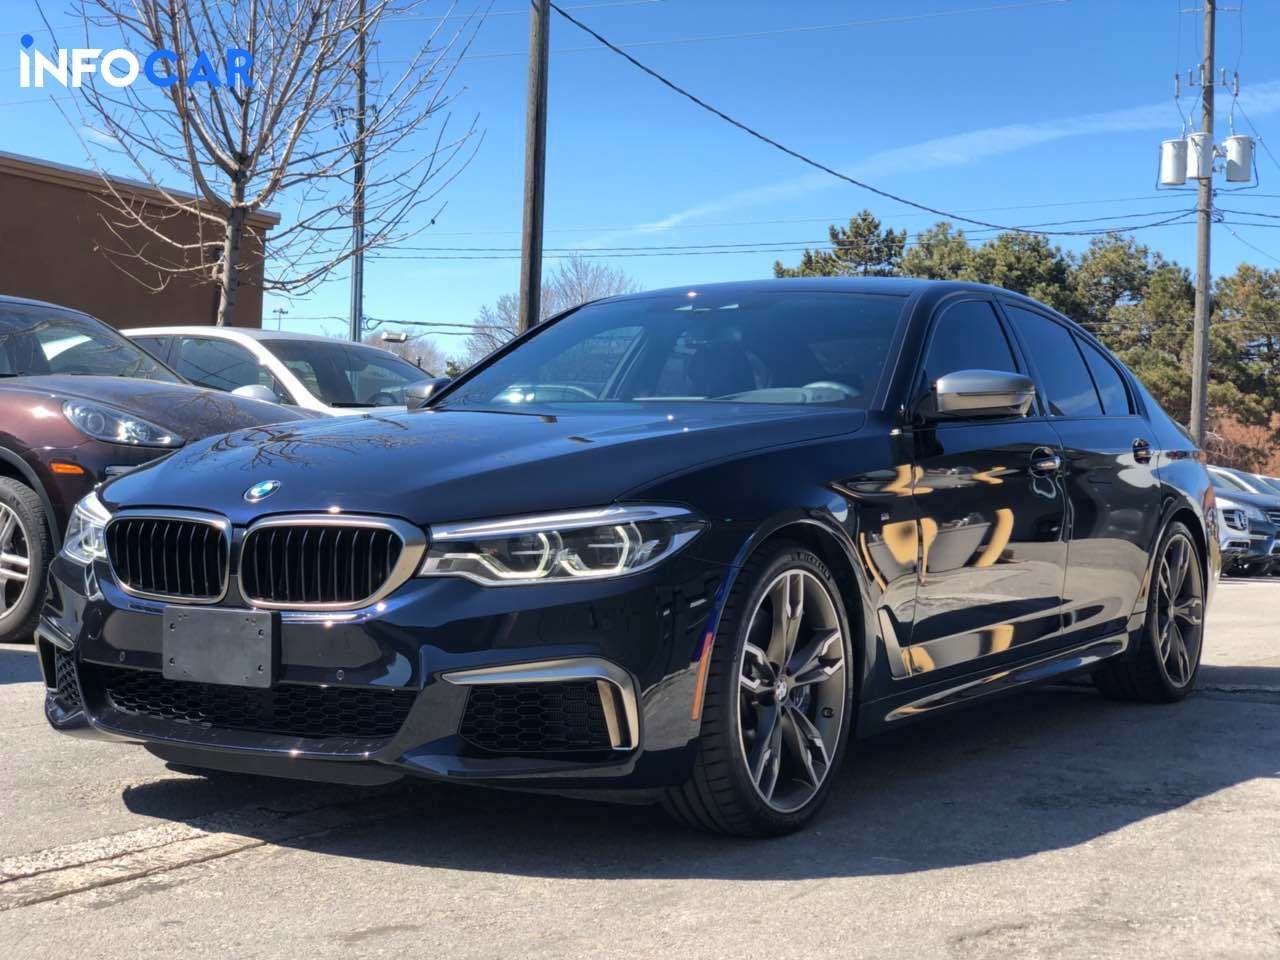 2018 BMW 5-Series M550 - INFOCAR - Toronto Auto Trading Platform